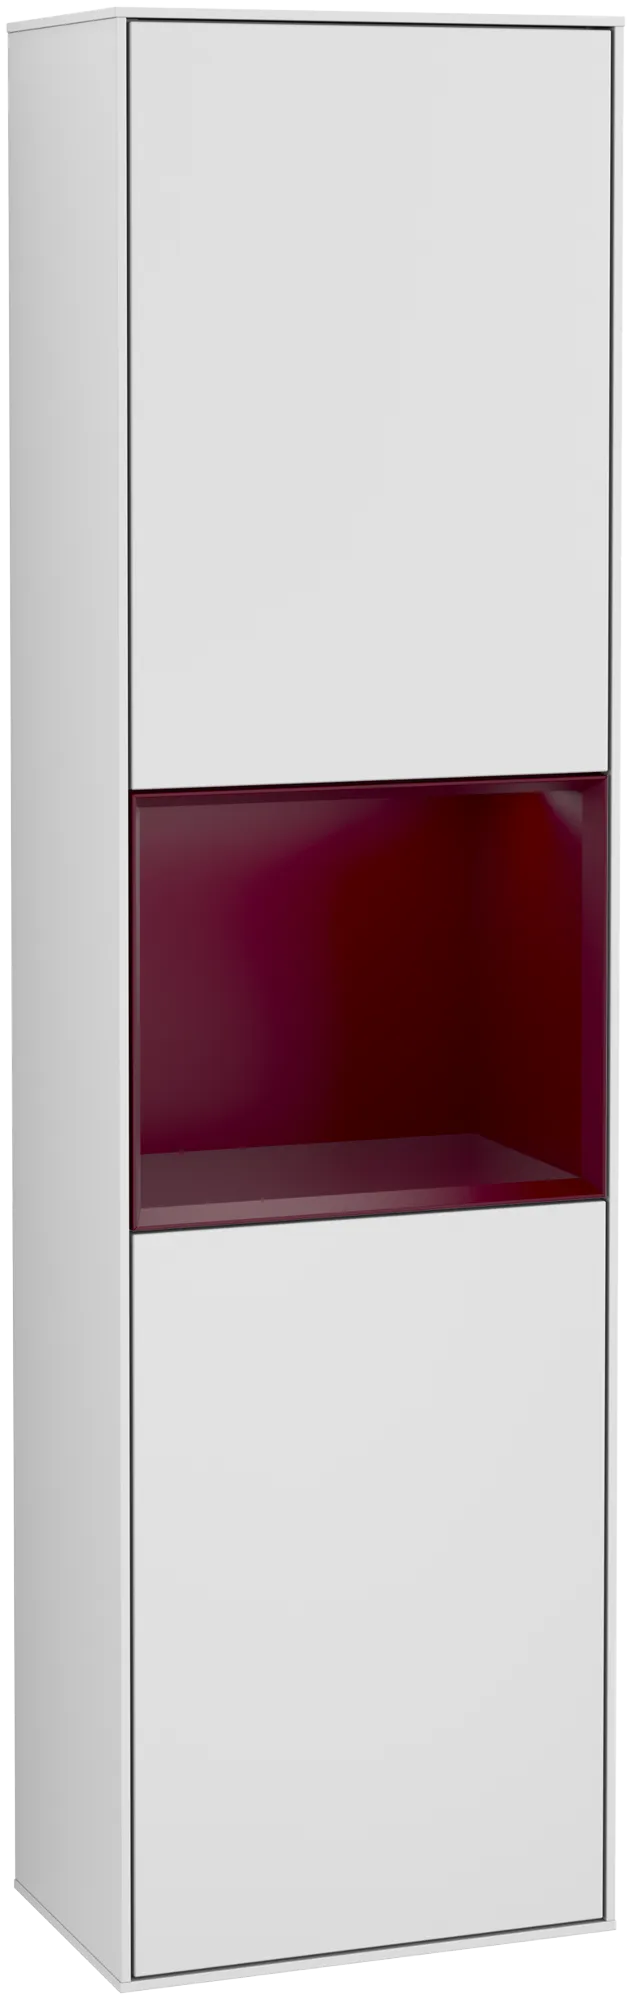 Bild von VILLEROY BOCH Finion Hochschrank, mit Beleuchtung, 2 Türen, 418 x 1516 x 270 mm, White Matt Lacquer / Peony Matt Lacquer #G470HBMT